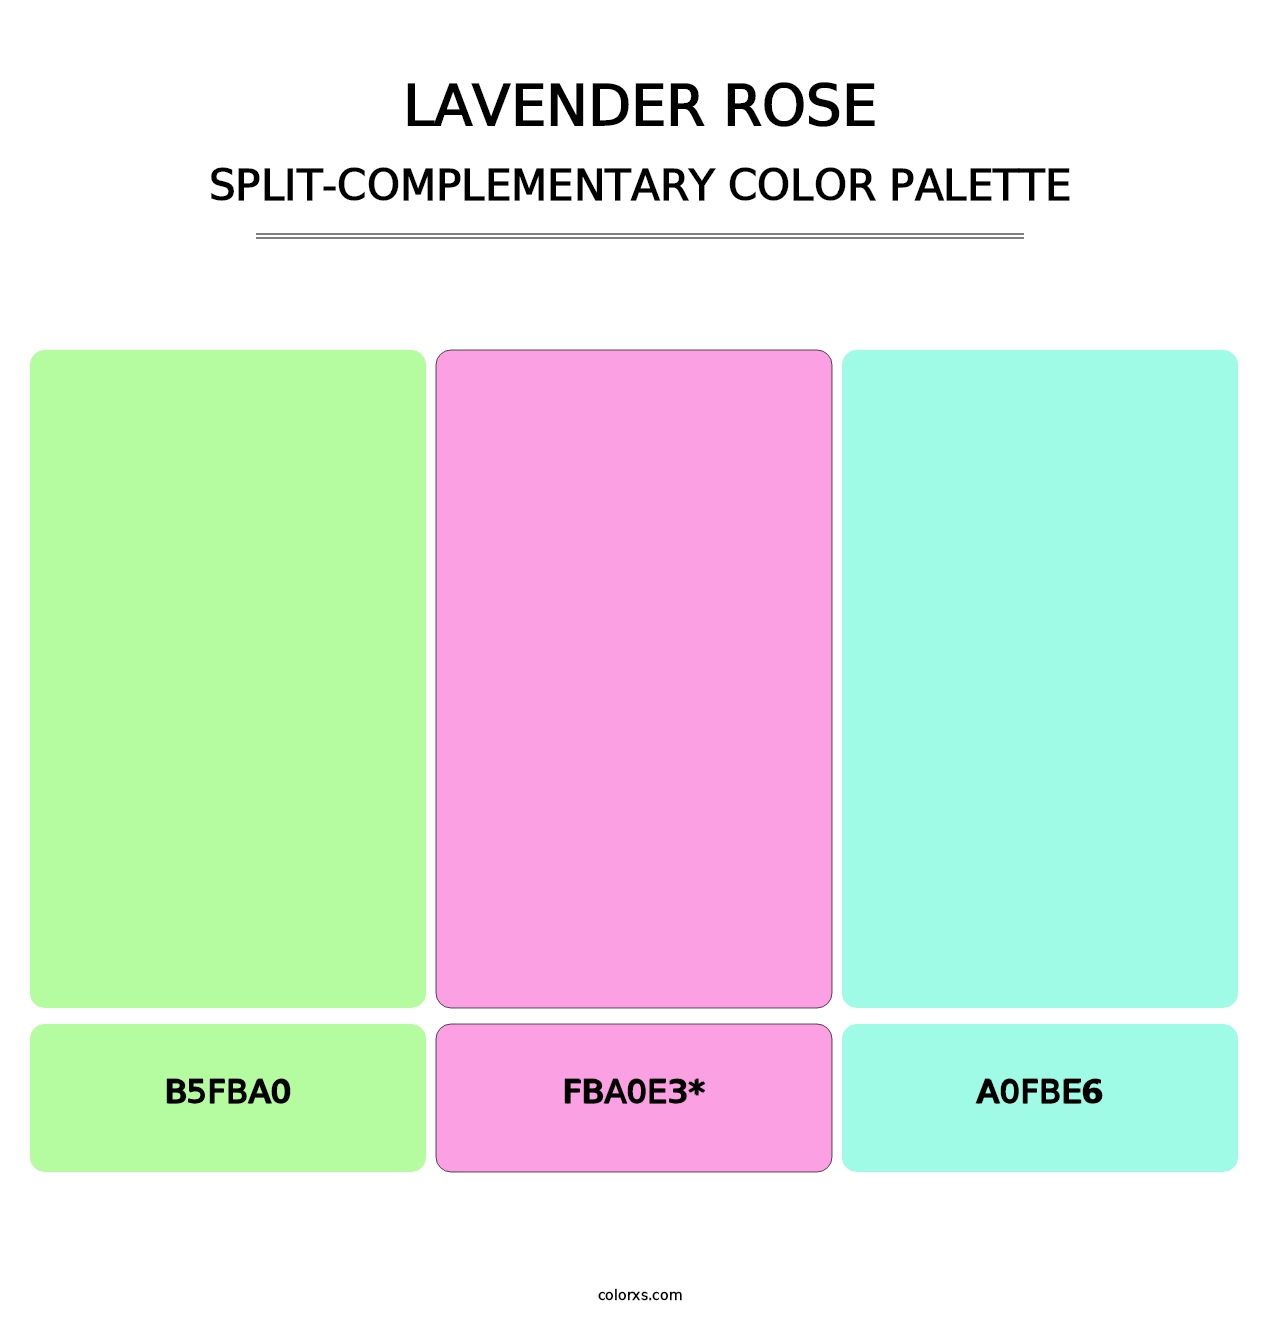 Lavender Rose - Split-Complementary Color Palette